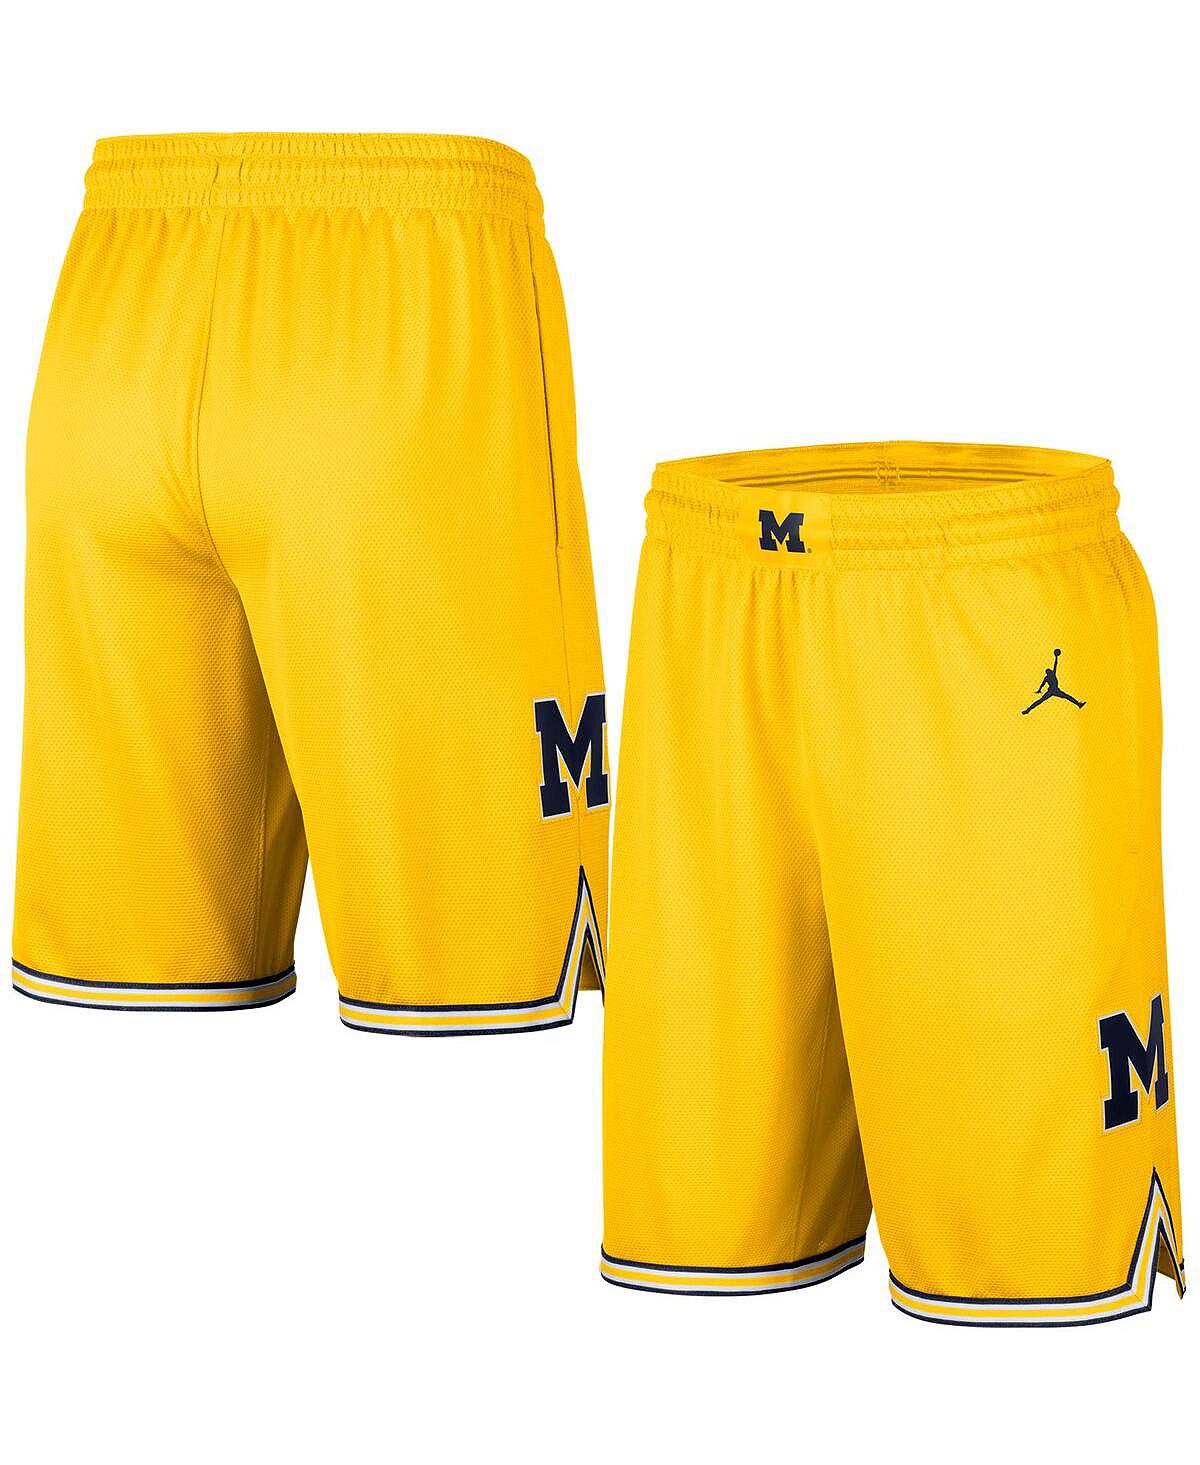 Мужские брендовые баскетбольные шорты Maize Michigan Wolverines Replica Team Jordan спортивные комплексы кмс кольцо баскетбольное со щитом